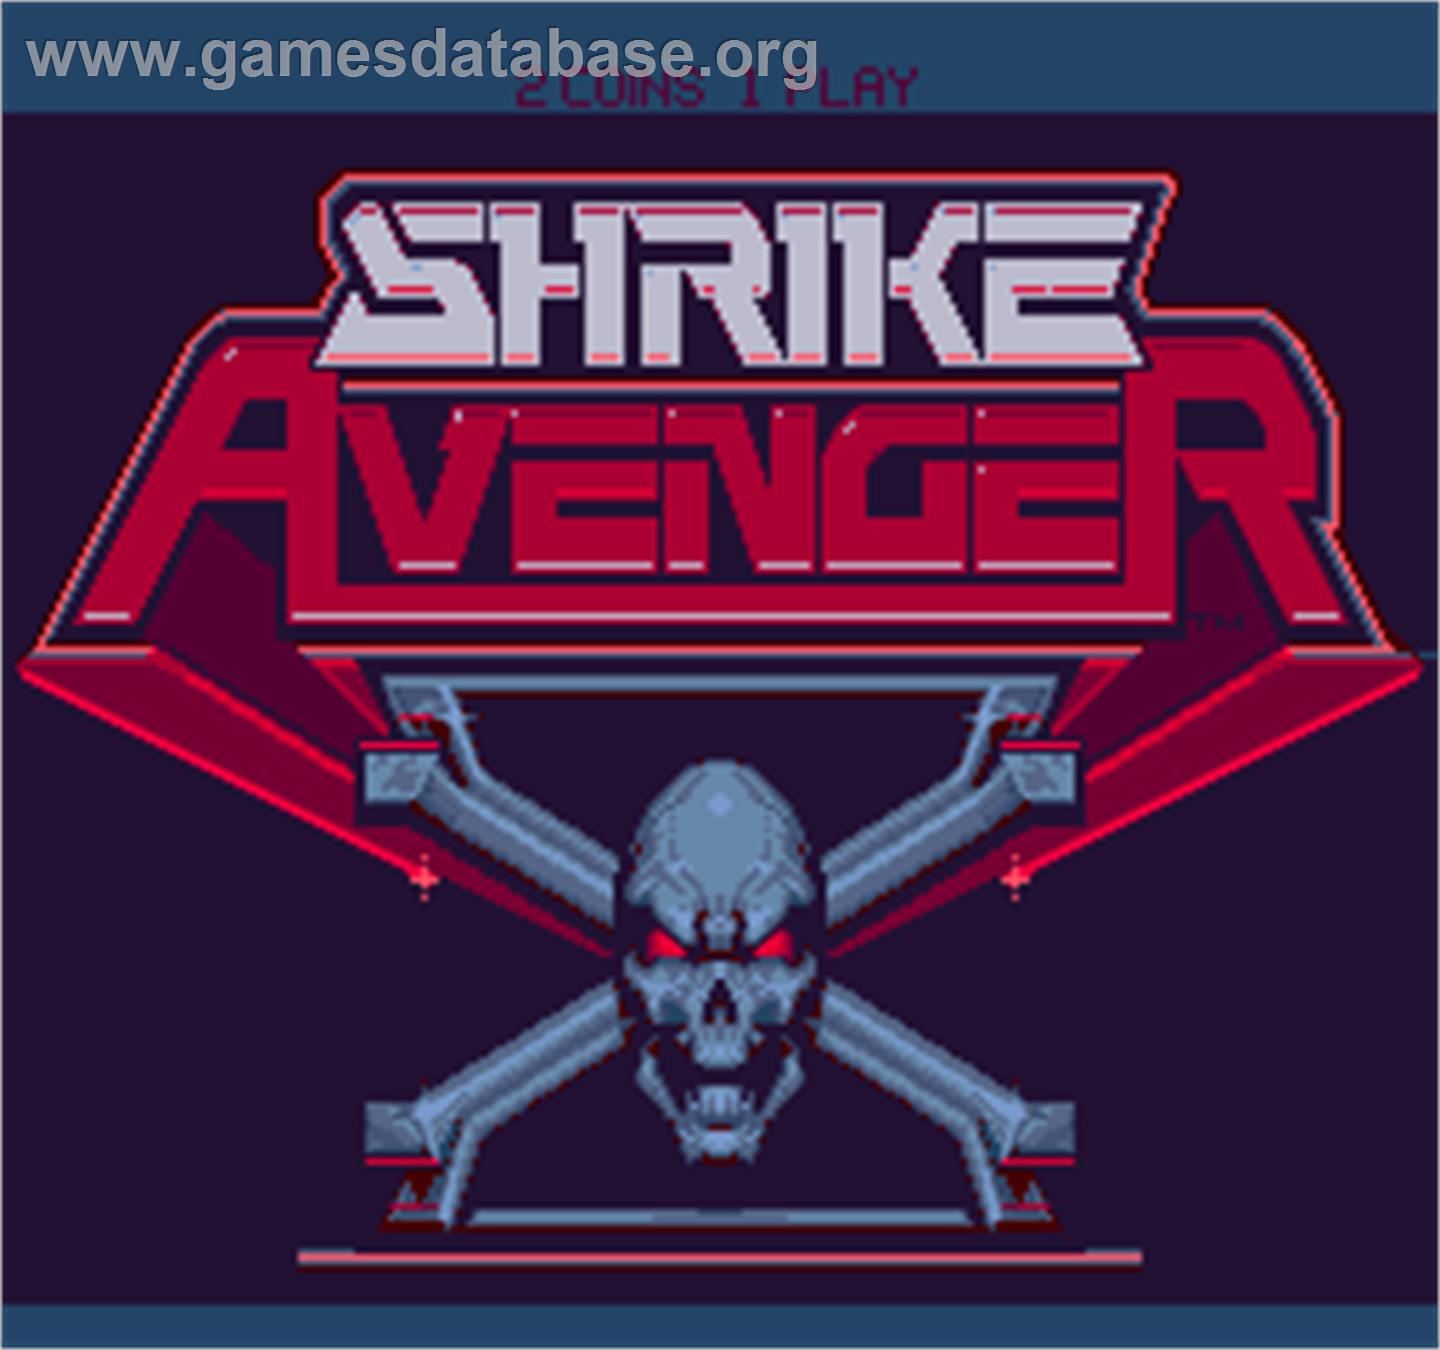 Shrike Avenger - Arcade - Artwork - Title Screen